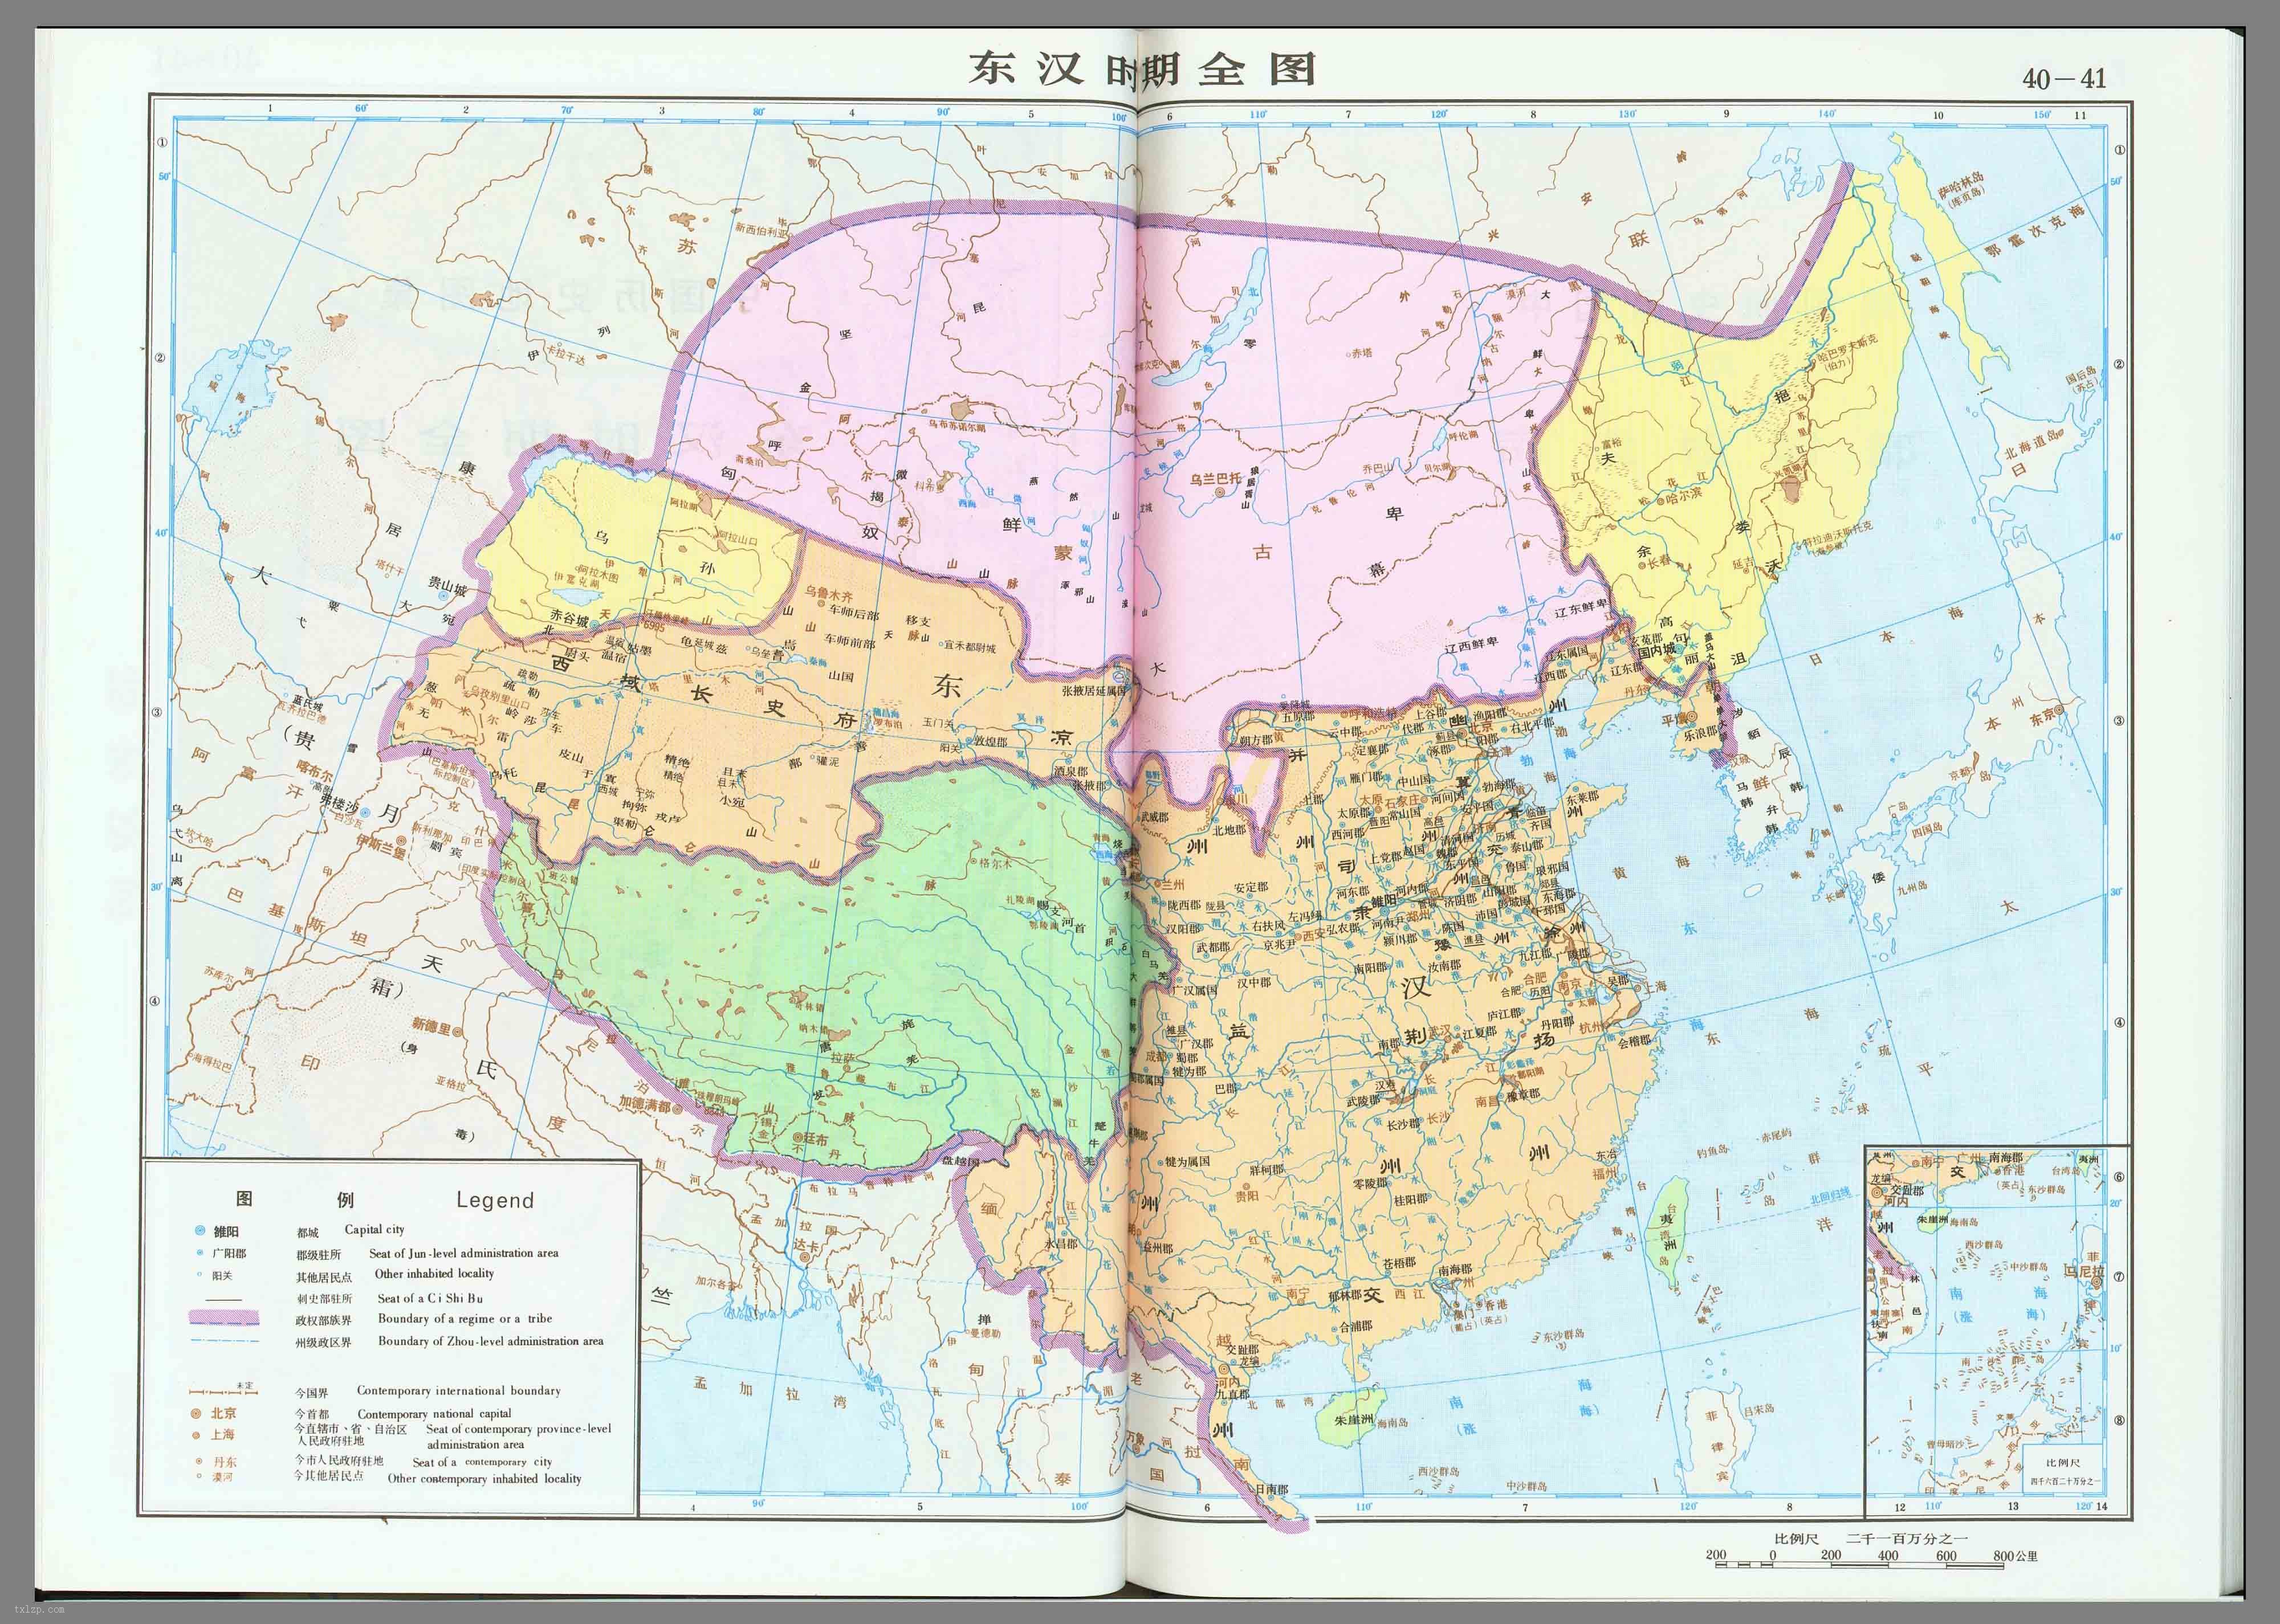   地图说明:1,东汉地图全图画